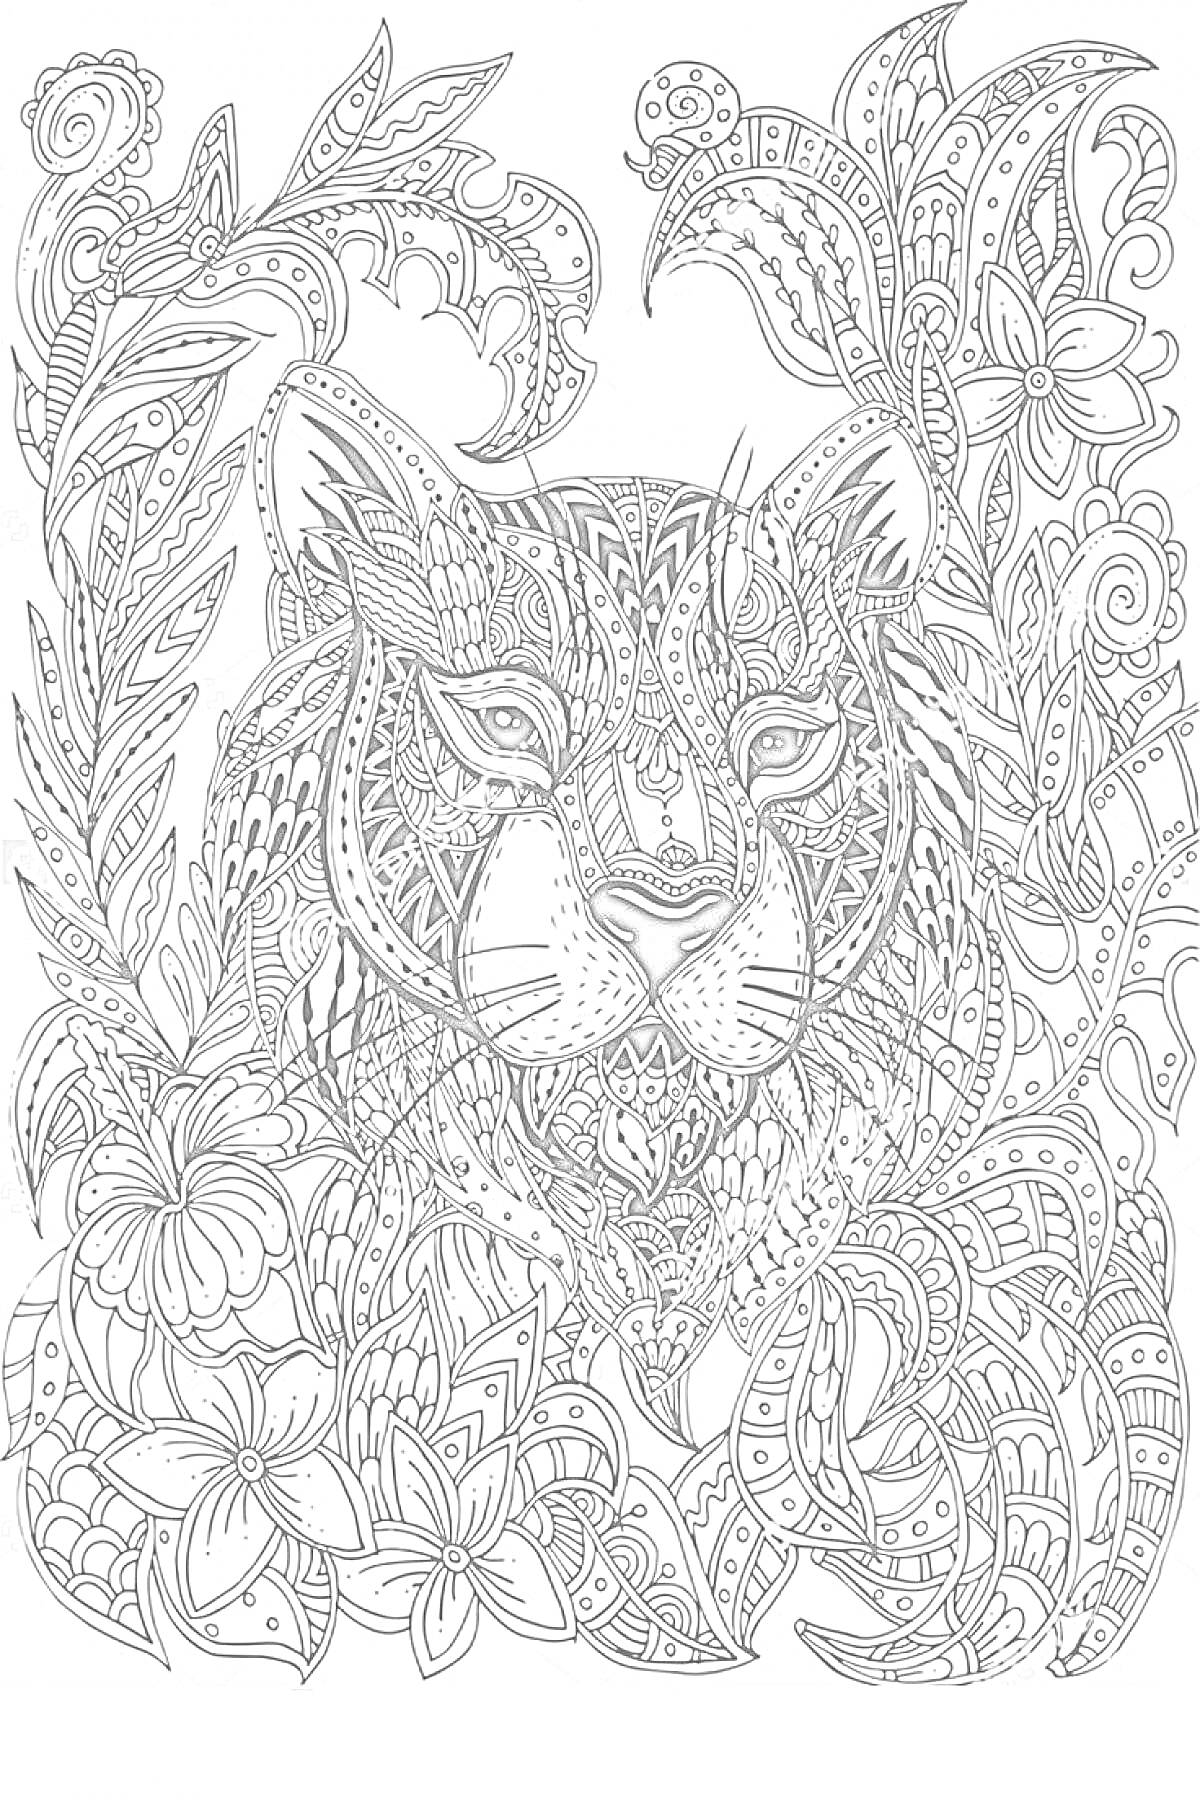 Раскраска Антистресс раскраска: тигр в окружении цветочных и растительных узоров